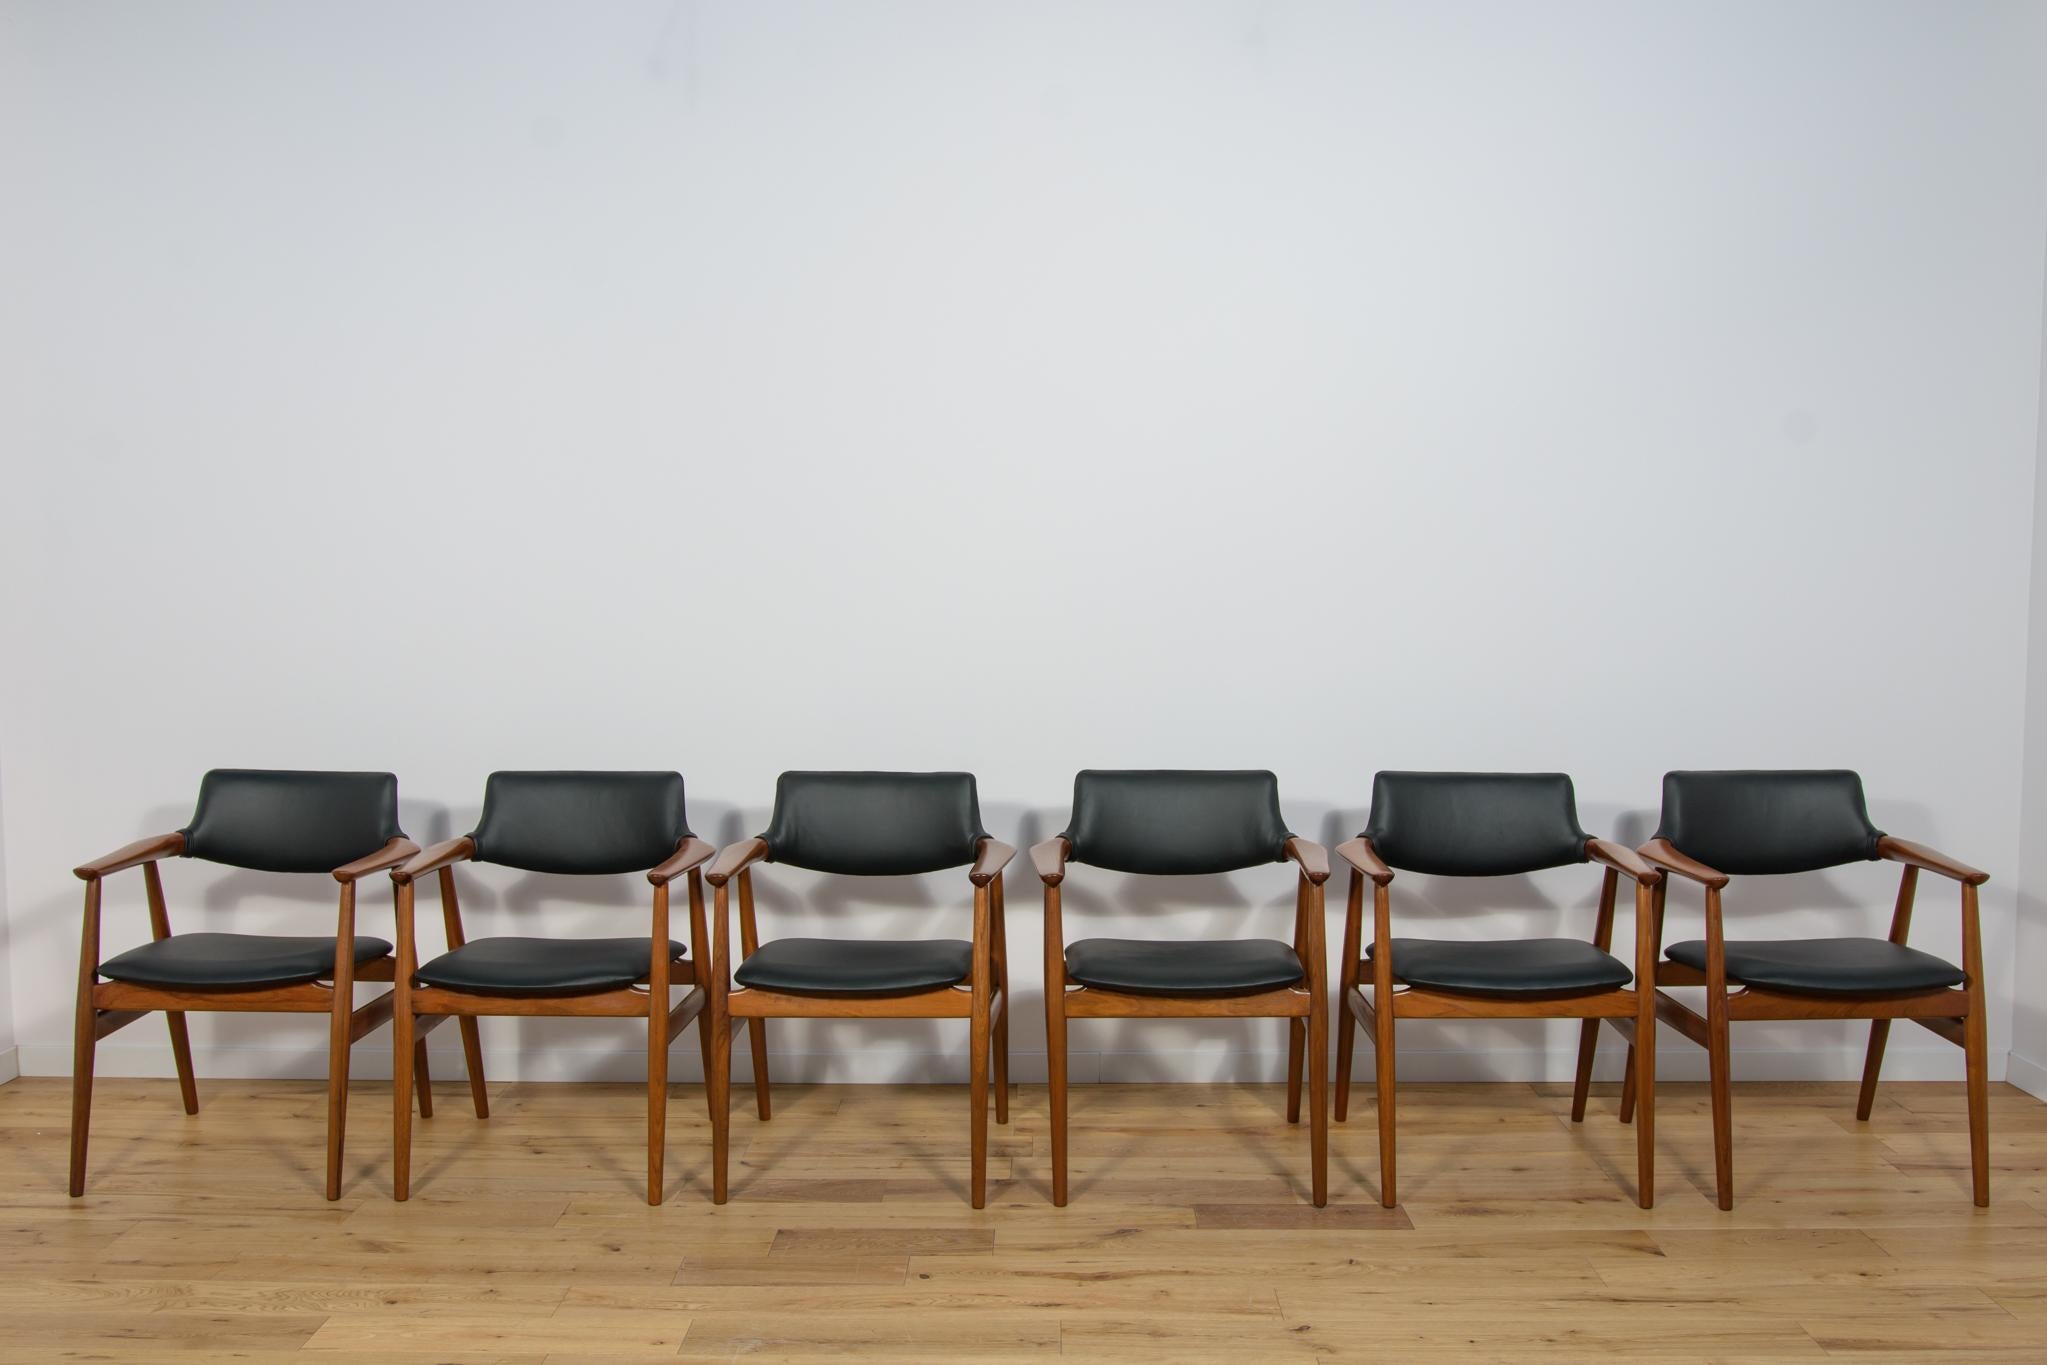 Ein Satz von sechs Stühlen, entworfen von Svend Åge Eriksen für die dänische Manufaktur Glostrup in den 1960er Jahren. Stühle mit einer schönen, einzigartigen Form, die von der hohen Kunstfertigkeit in Design und Verarbeitung zeugen, die für das